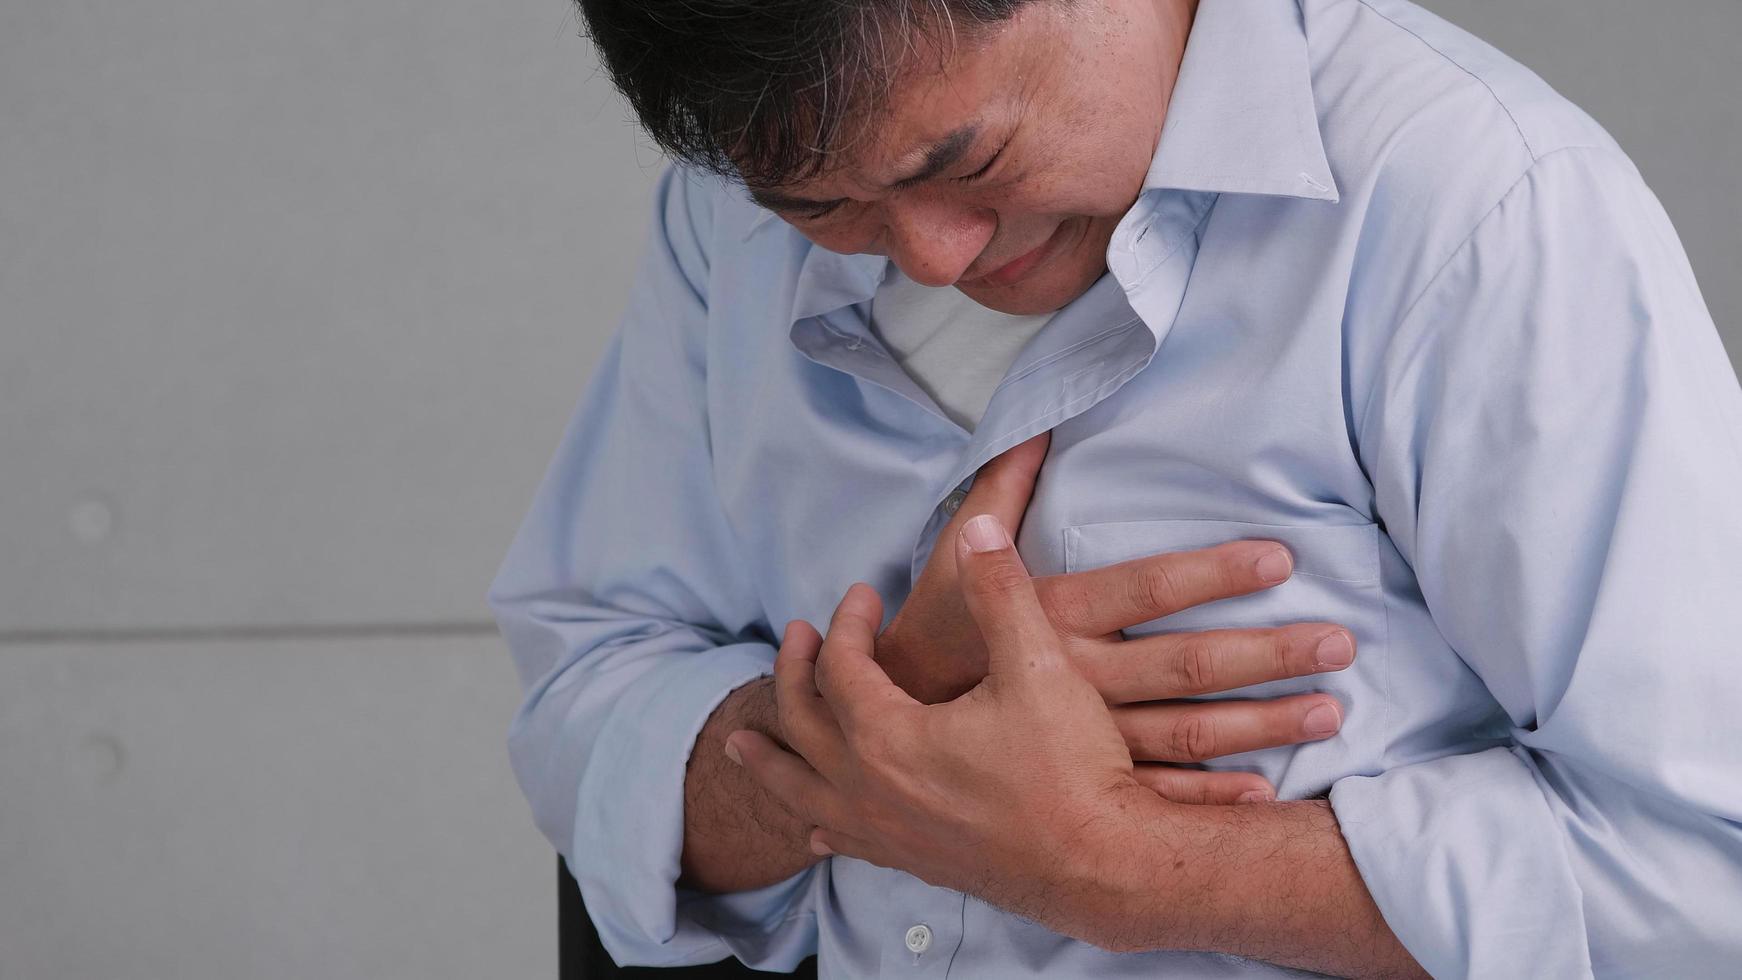 el hombre asiático tiene dolor en el pecho causado por una enfermedad cardíaca. foto